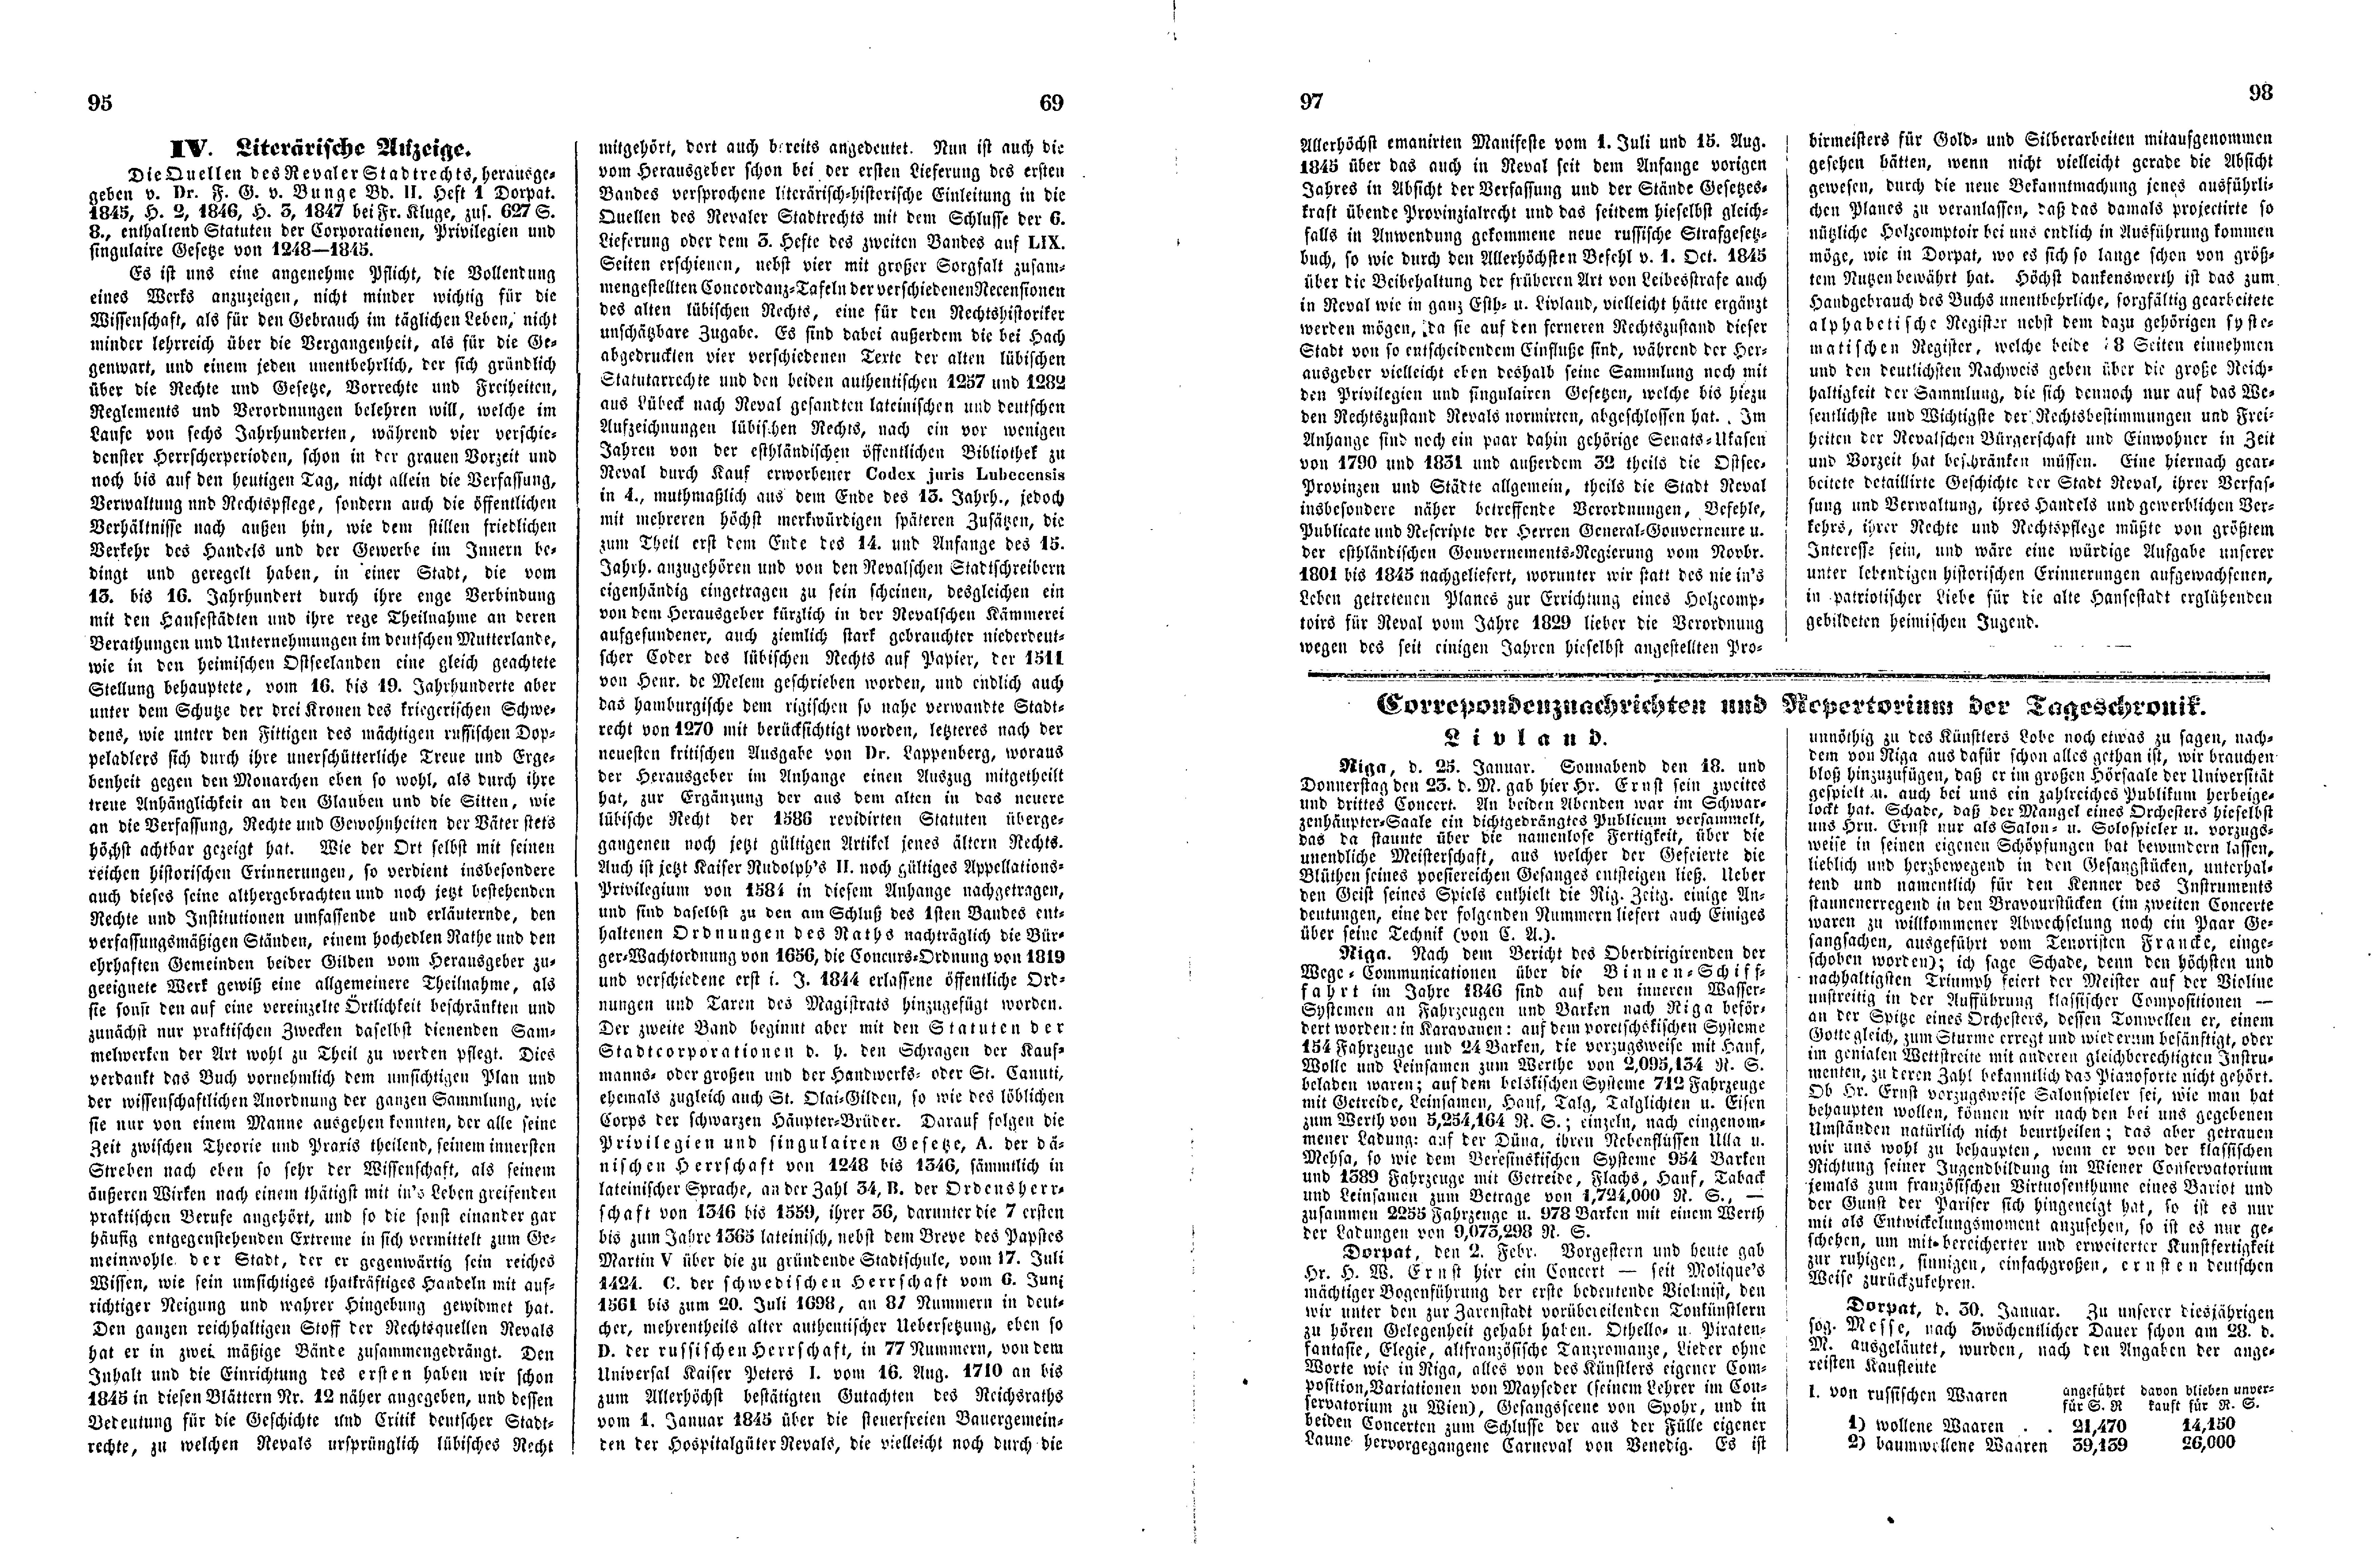 Das Inland [12] (1847) | 29. (95-98) Haupttext